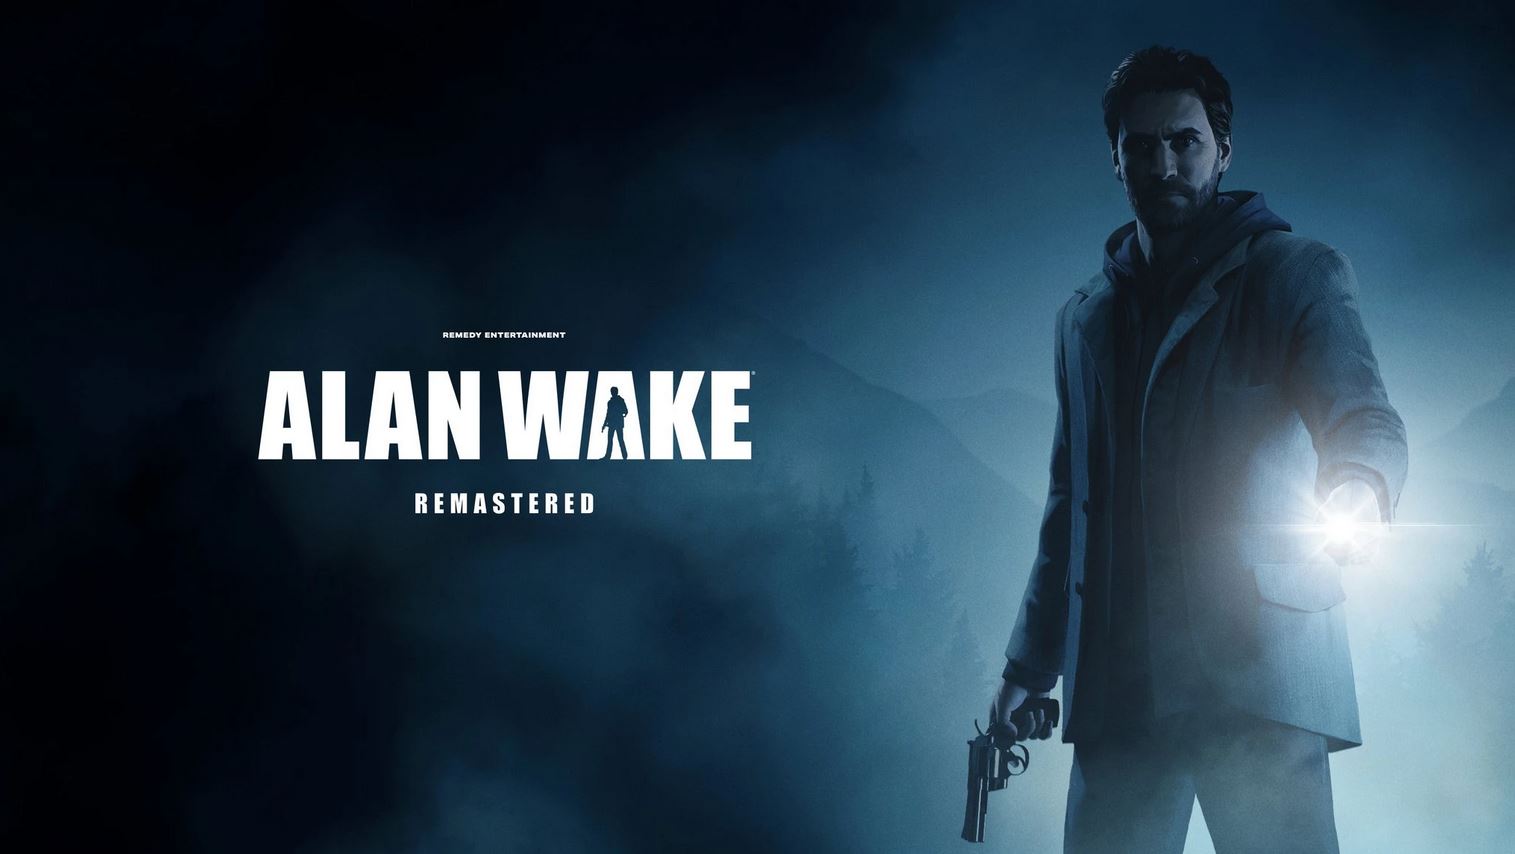 Alan Wake Gameplay 2021 Wallpapers